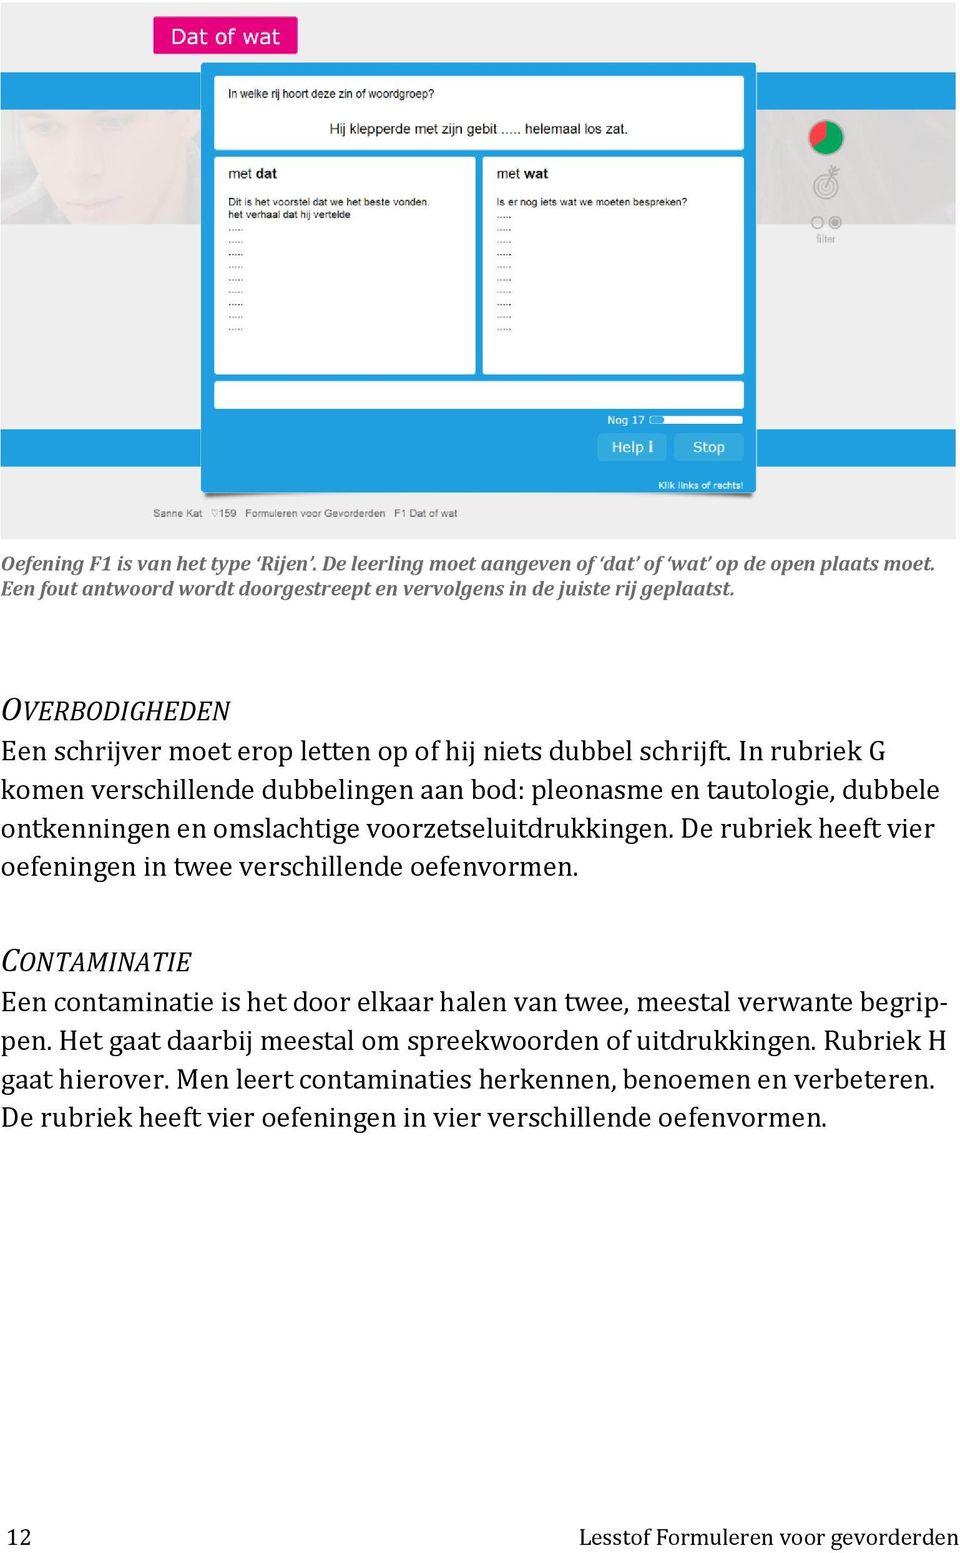 Lesstof. Formuleren. voor gevorderden - PDF Gratis download